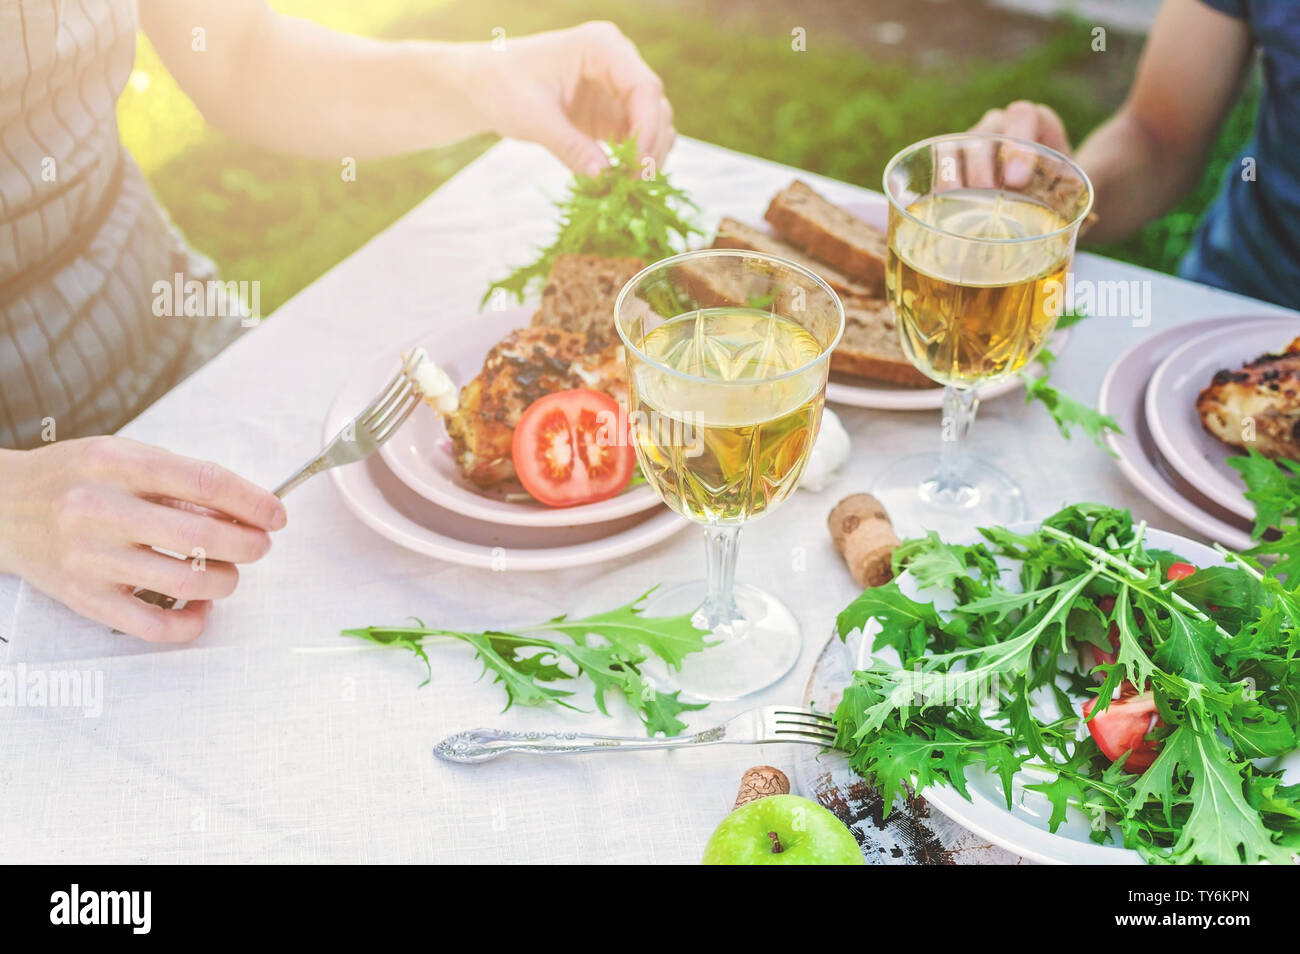 La cena in giardino. La gente mangia a tavola con vino e grigliate di pesce, verdure fresche e erbe aromatiche. Inquadratura orizzontale Foto Stock